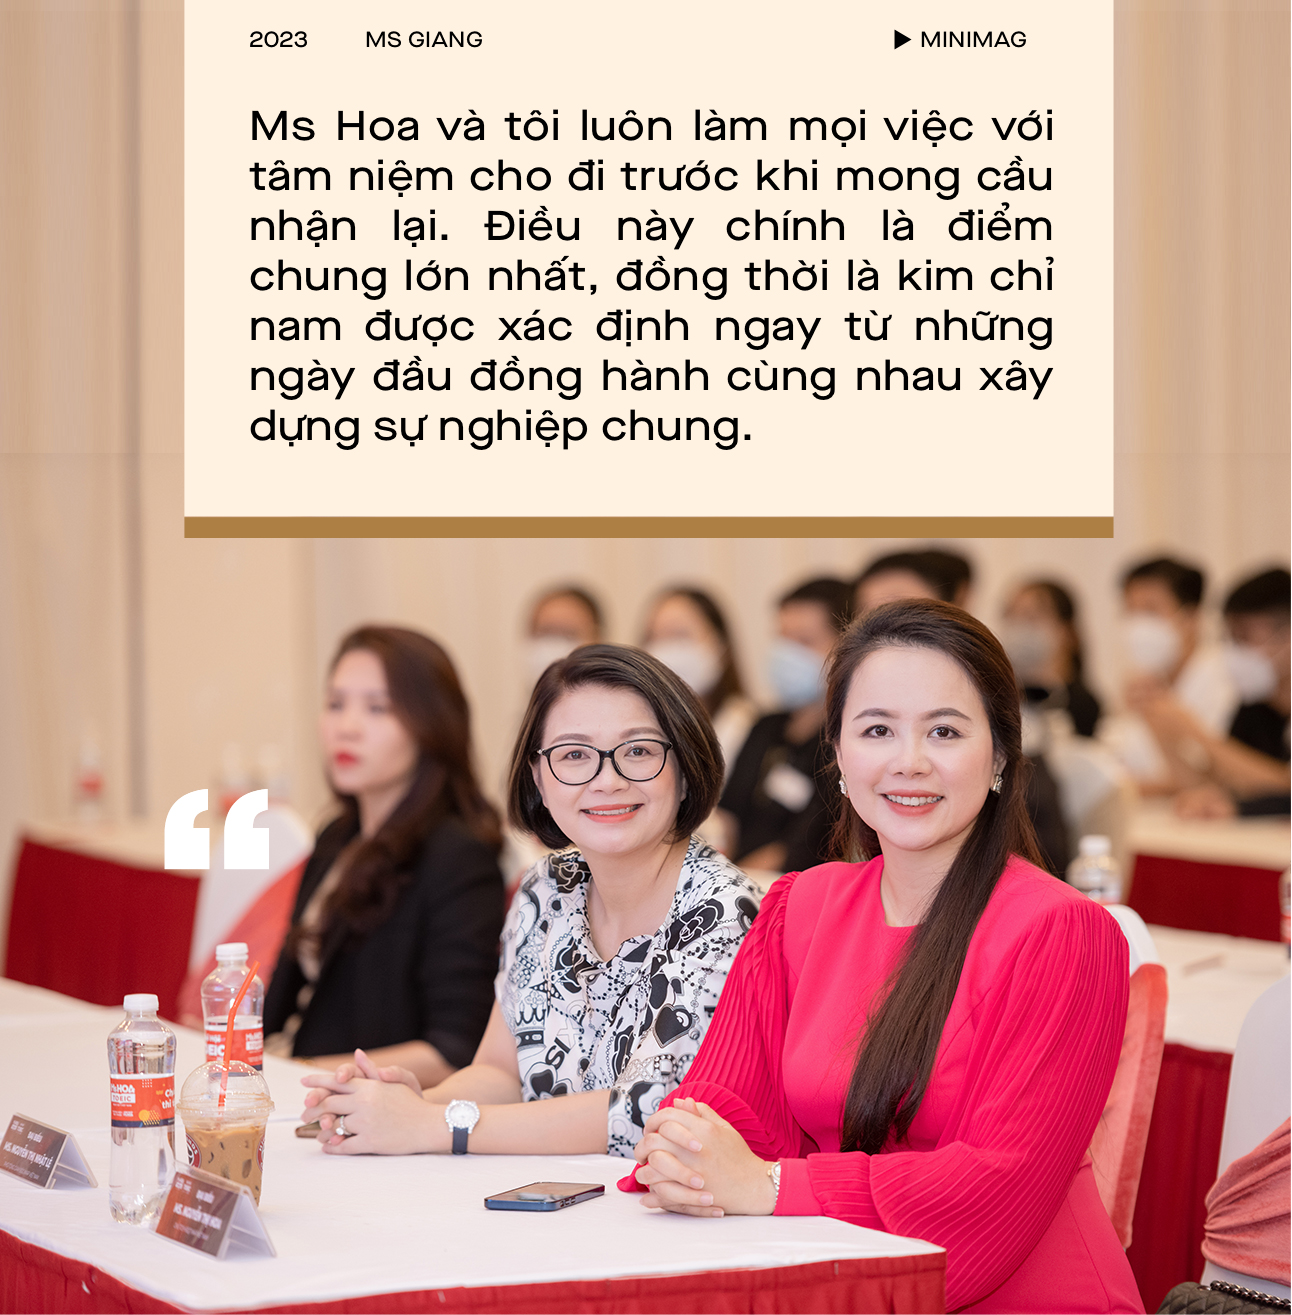  Người chị ruột đồng hành với Ms Hoa trong 10 năm truyền cảm hứng tiếng Anh: “Lựa chọn quan trọng hơn nỗ lực, học chăm chỉ nhưng sai định hướng là sự lãng phí thời gian, công sức” - Ảnh 7.